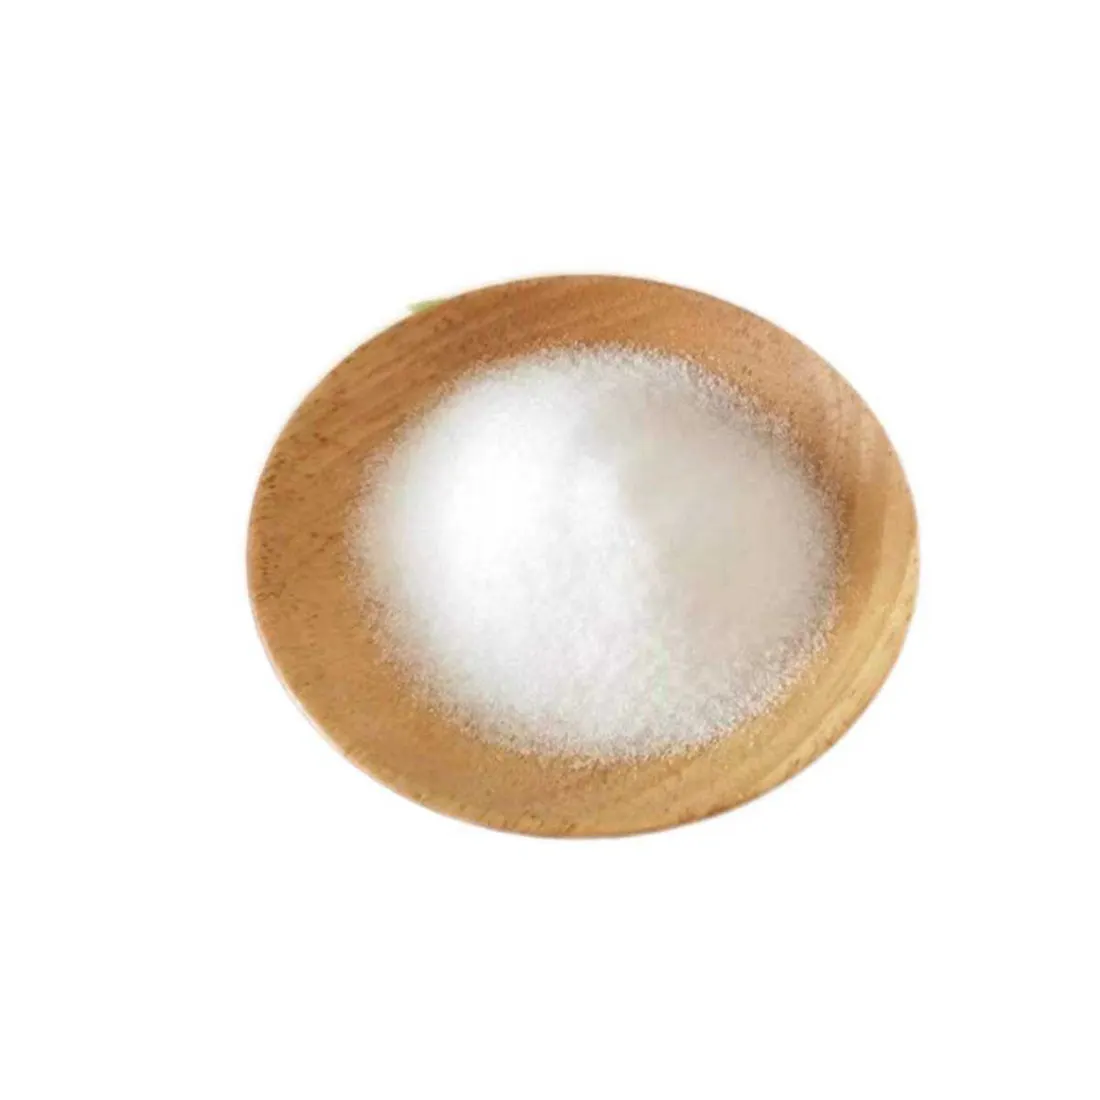 Açúcar refinado branco e marrom icumsa 45 açúcar refinado branco ic45 açúcar refinado branco